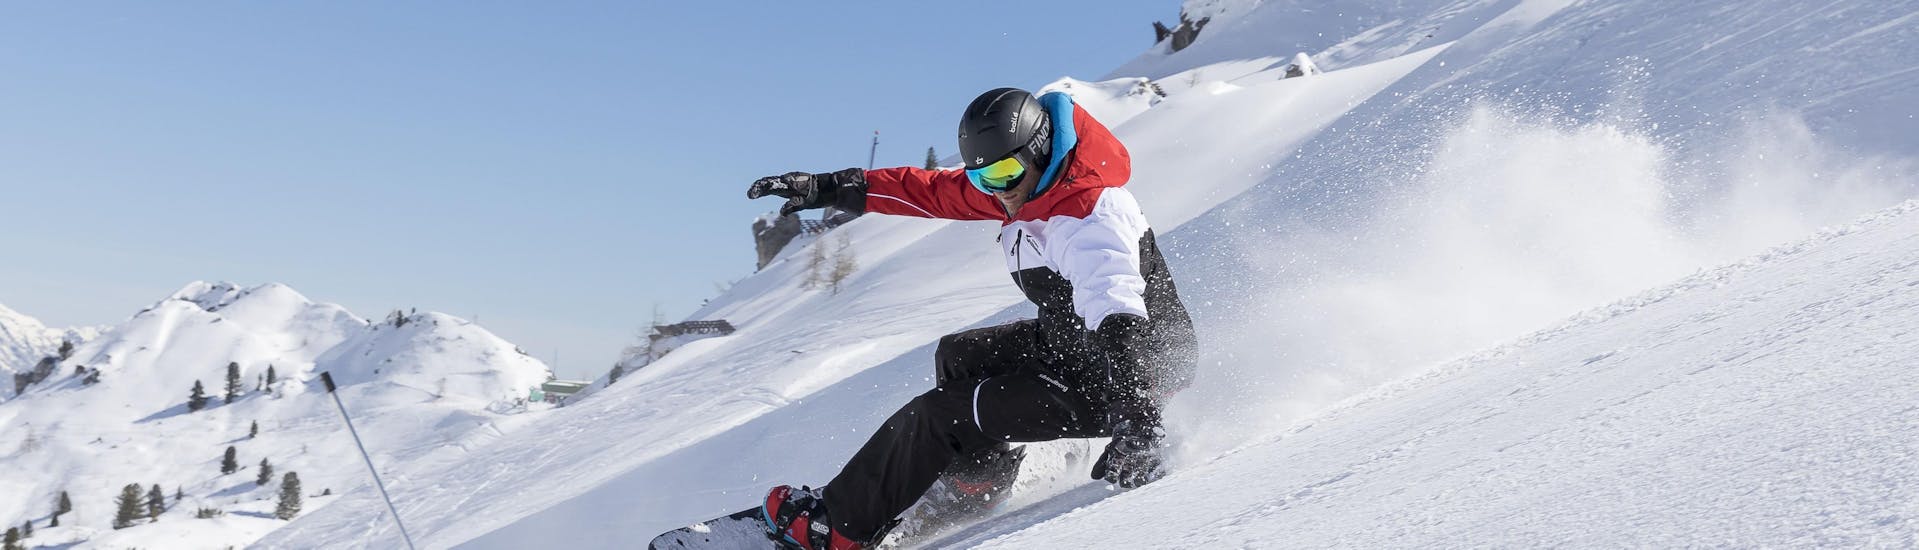 Un snowboarder desciende por una pista durante sus clases de snowboard para snowboarders de nivel avanzado en Stubai.